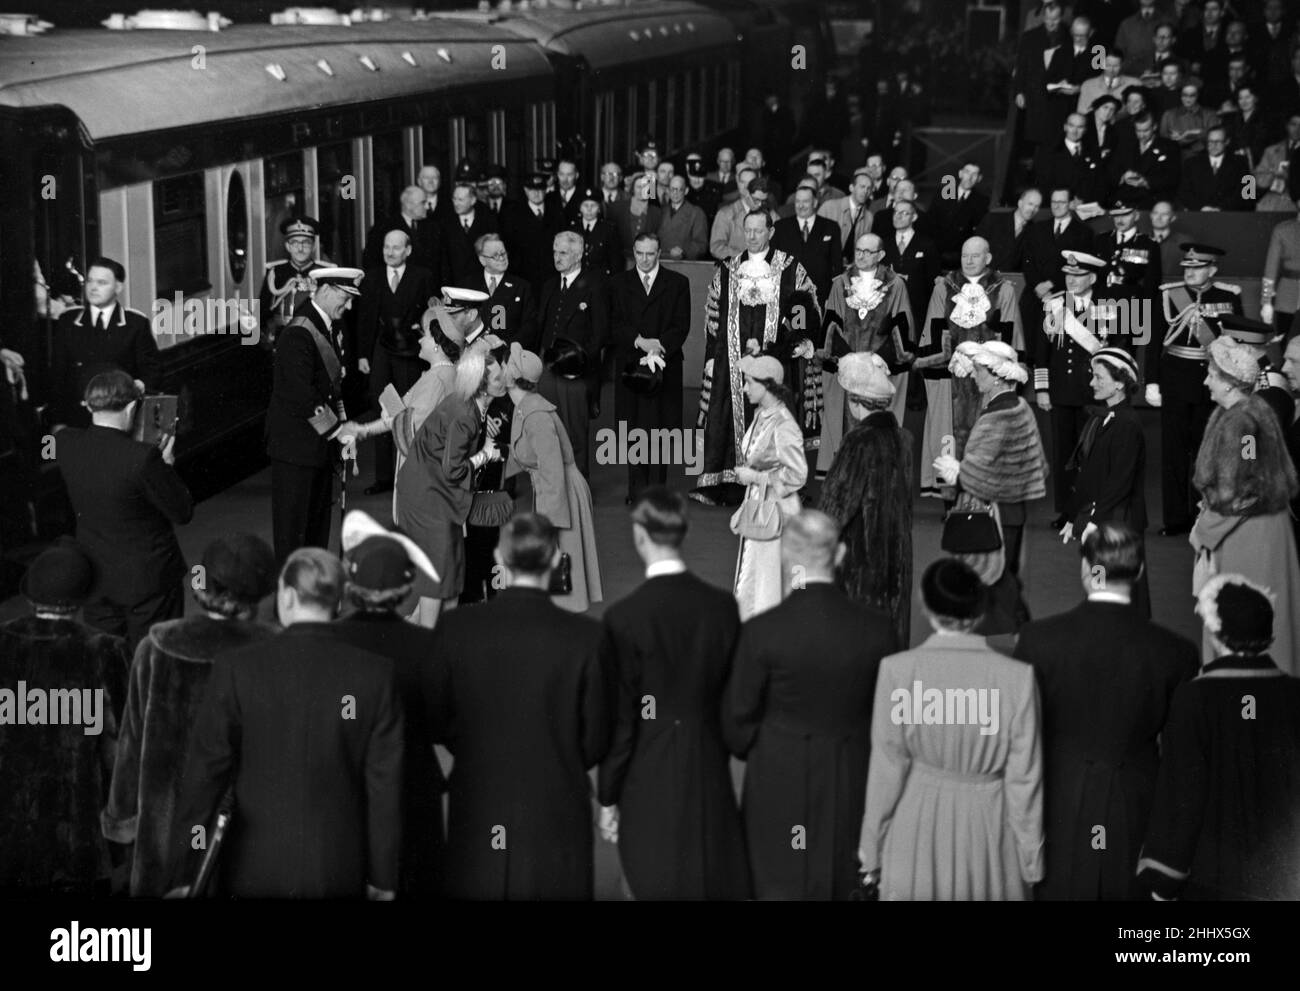 Der Staatsbesuch von König Friedrich IX. Und Königin Ingrid von Dänemark. Bei ihrer Ankunft werden sie von Mitgliedern der britischen Königsfamilie begrüßt. 8th Mai 1951. Stockfoto